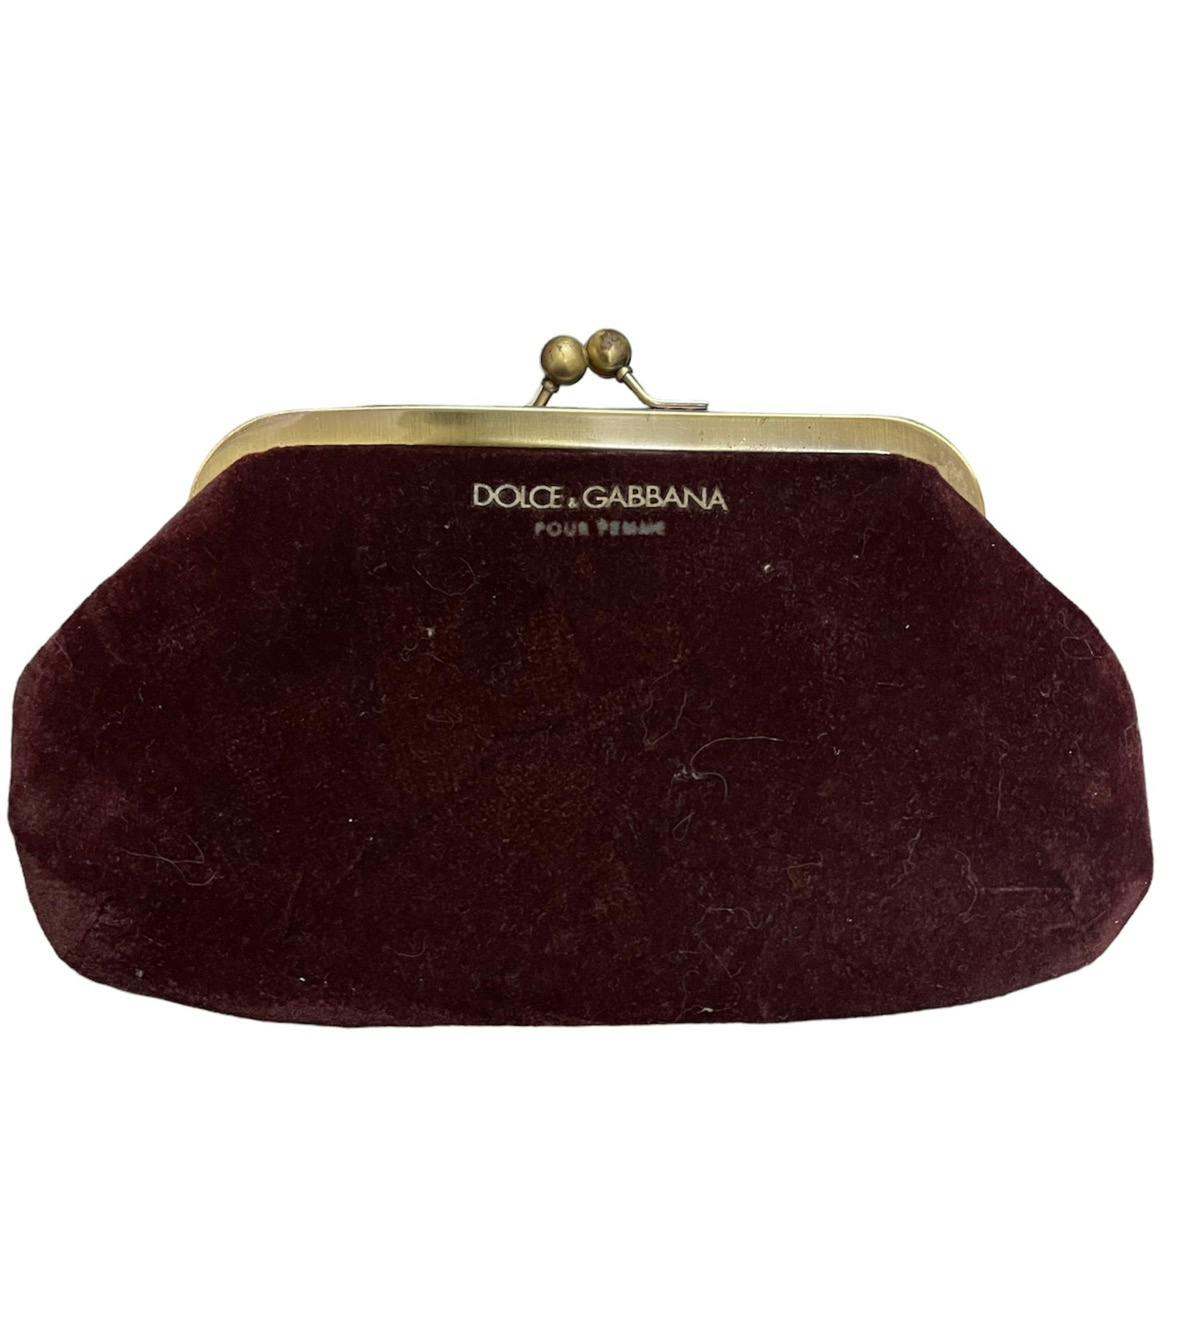 Dolce & Gabbana coin purse - 1